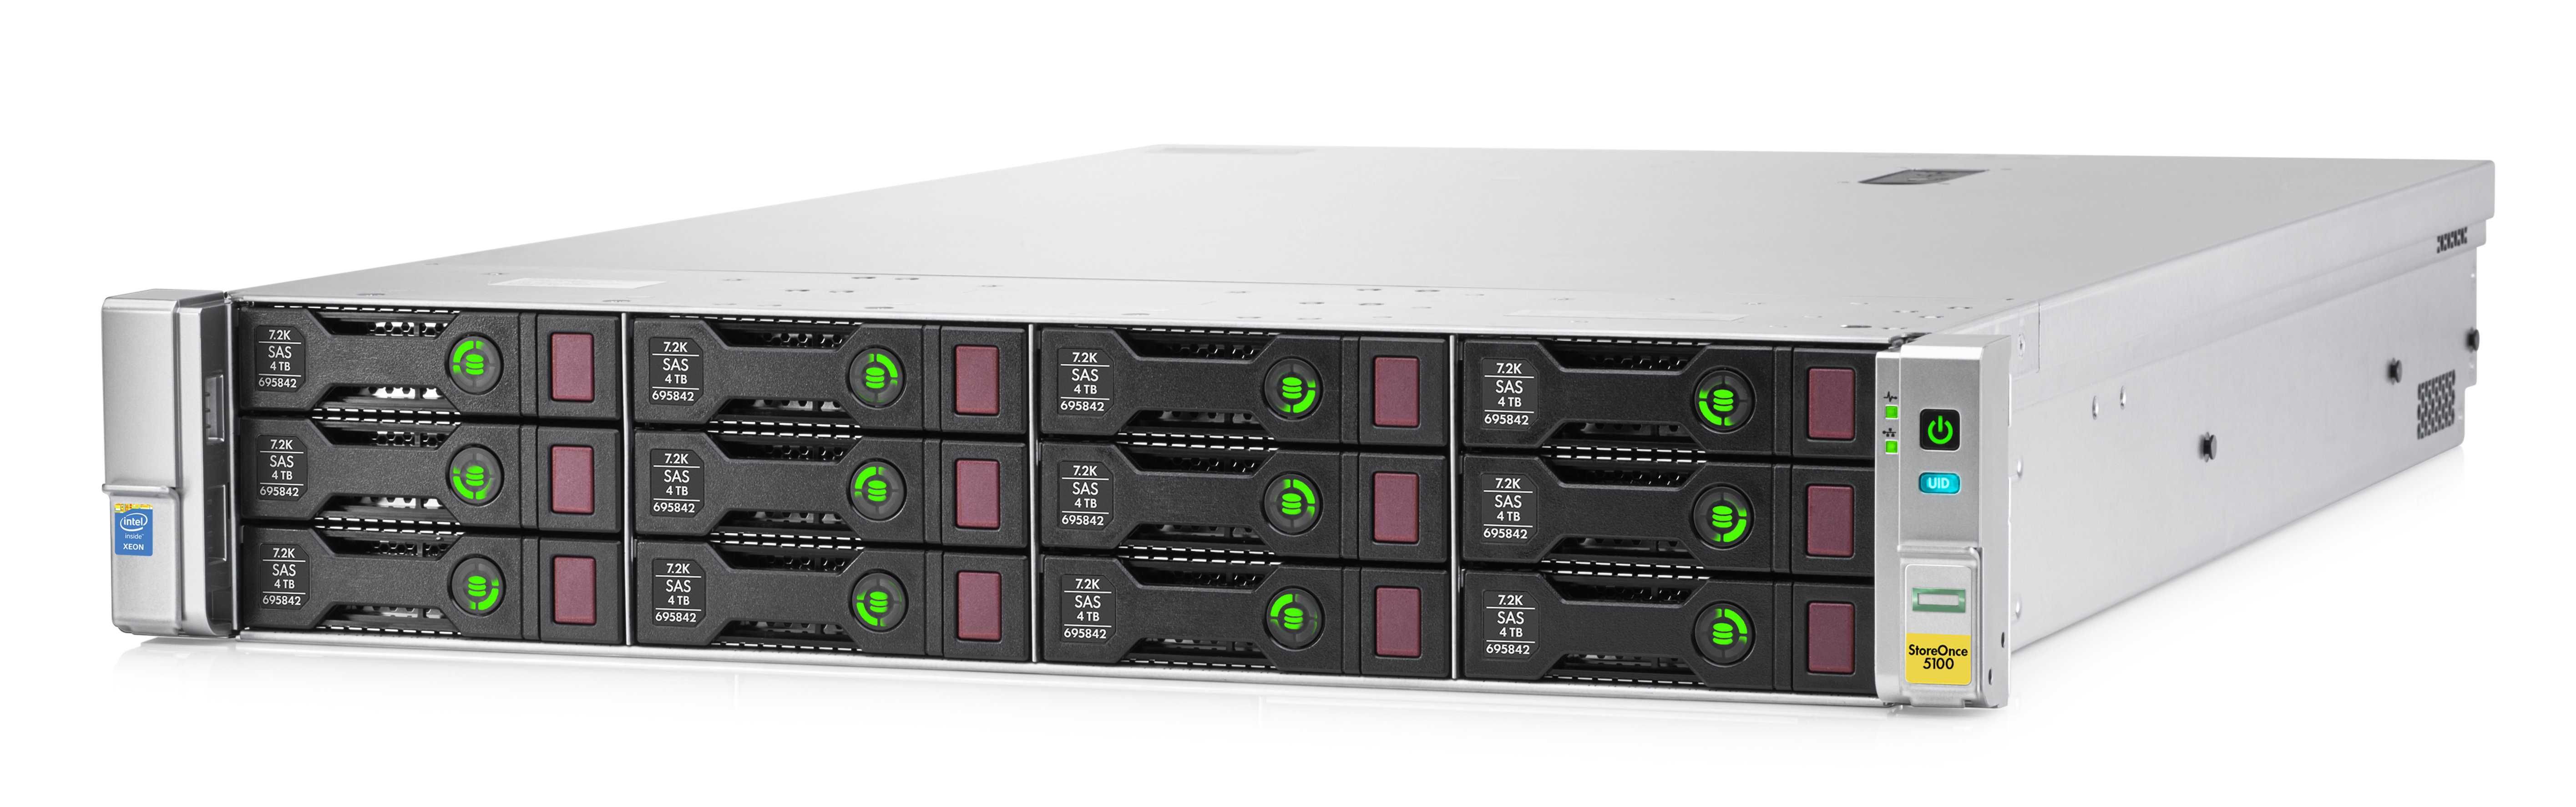 HPE StoreOnce 5100 - Extensão para 12 x Discos 3.5" c/ ligação de 12G